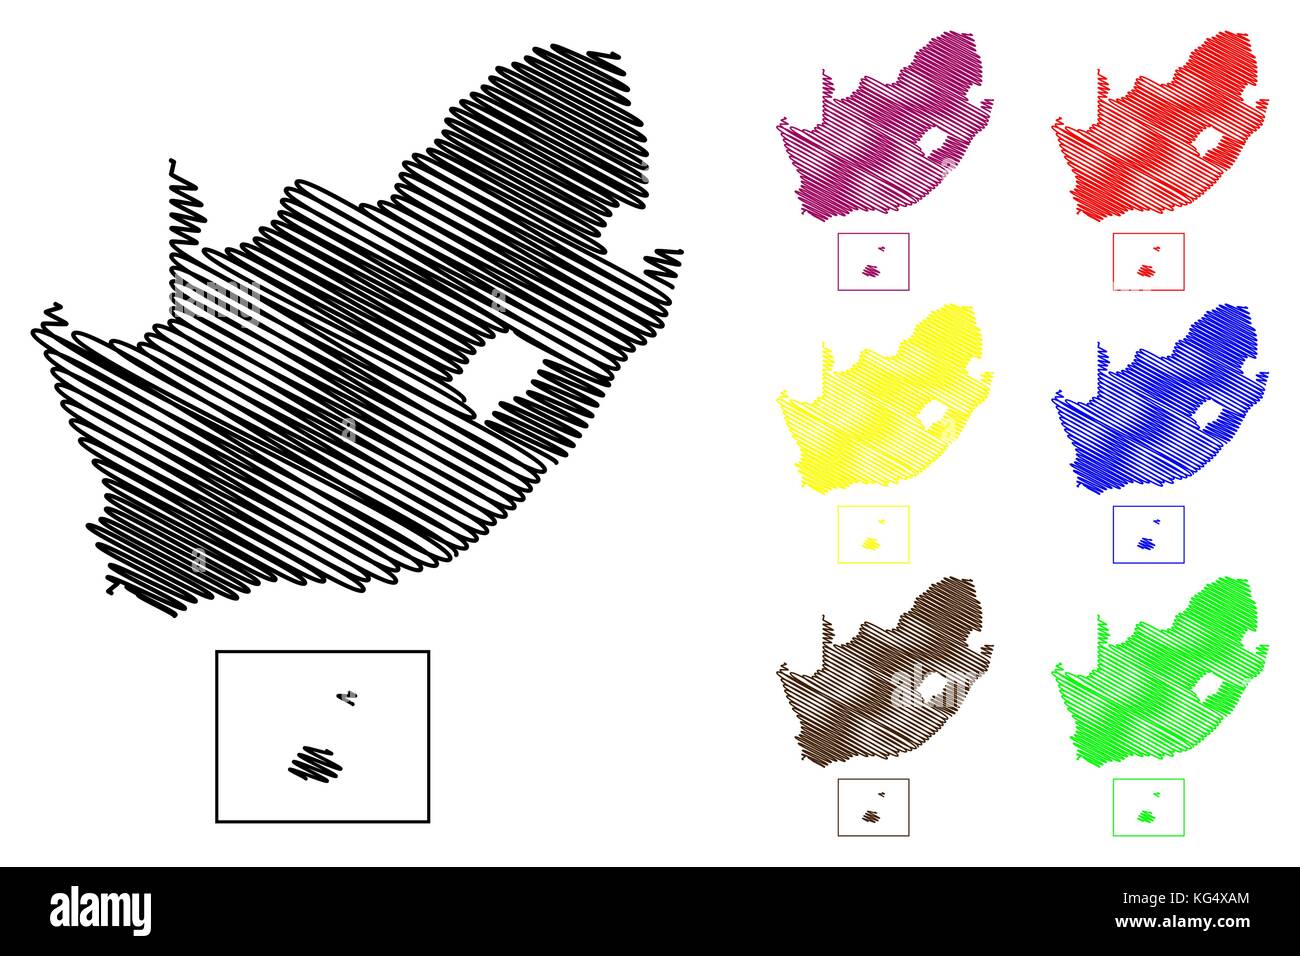 Carte de l'Afrique du Sud, d'illustration vectorielle scribble sketch fsa, Prince Edward Island, l'île Marion, Illustration de Vecteur